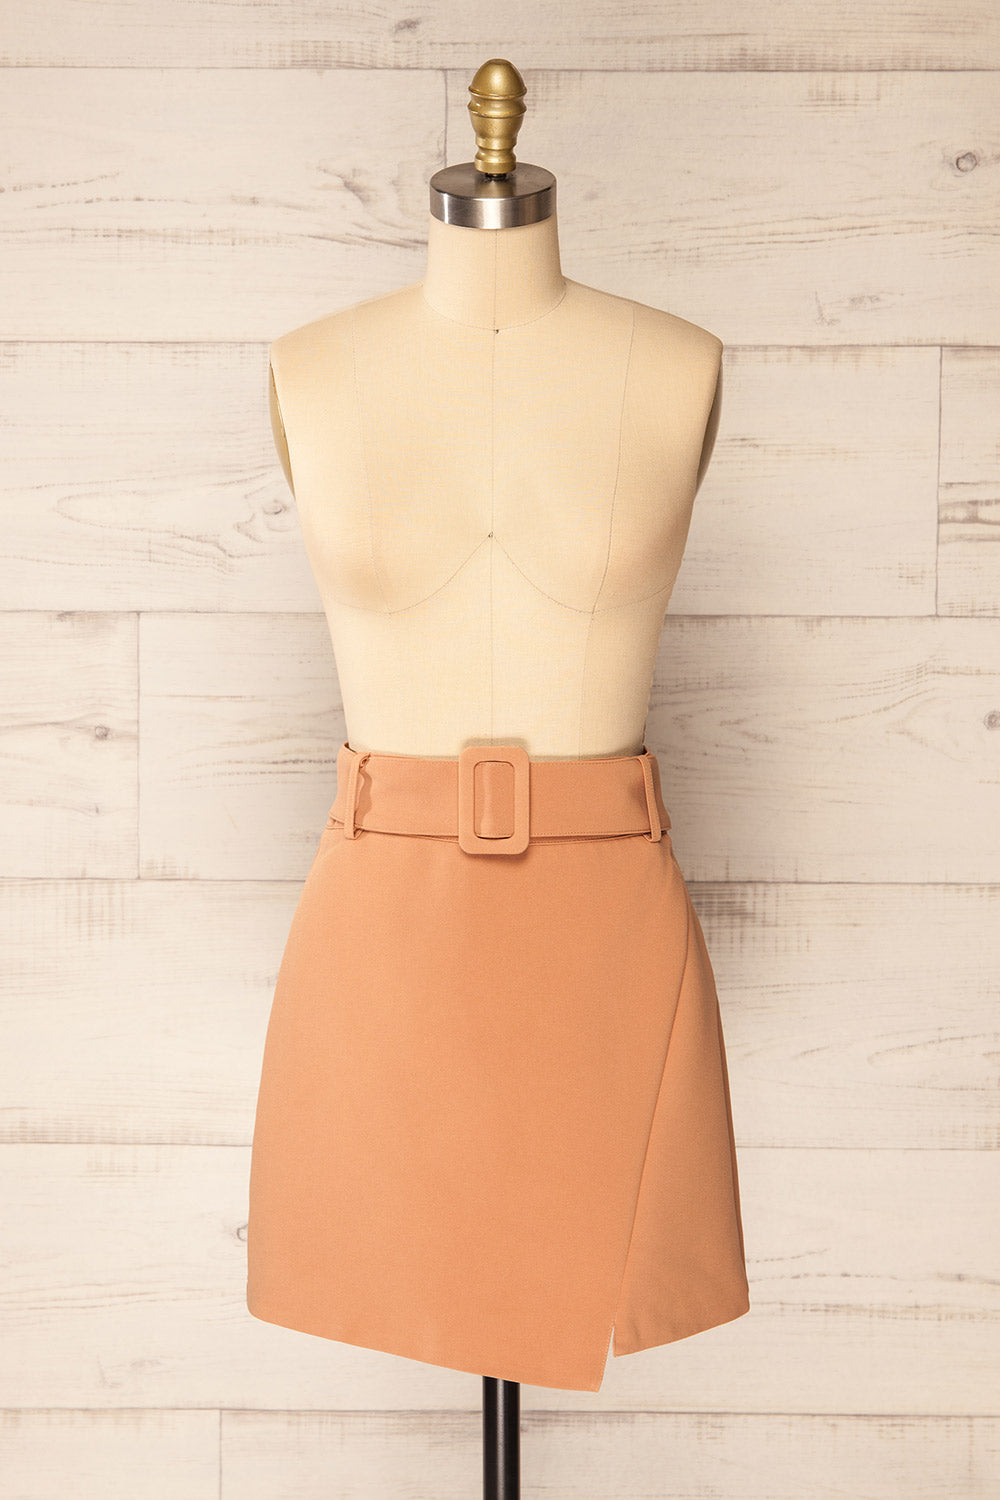 Wicklow Short Beige Skirt w/ Asymmetrical Hem | La petite garçonne front view